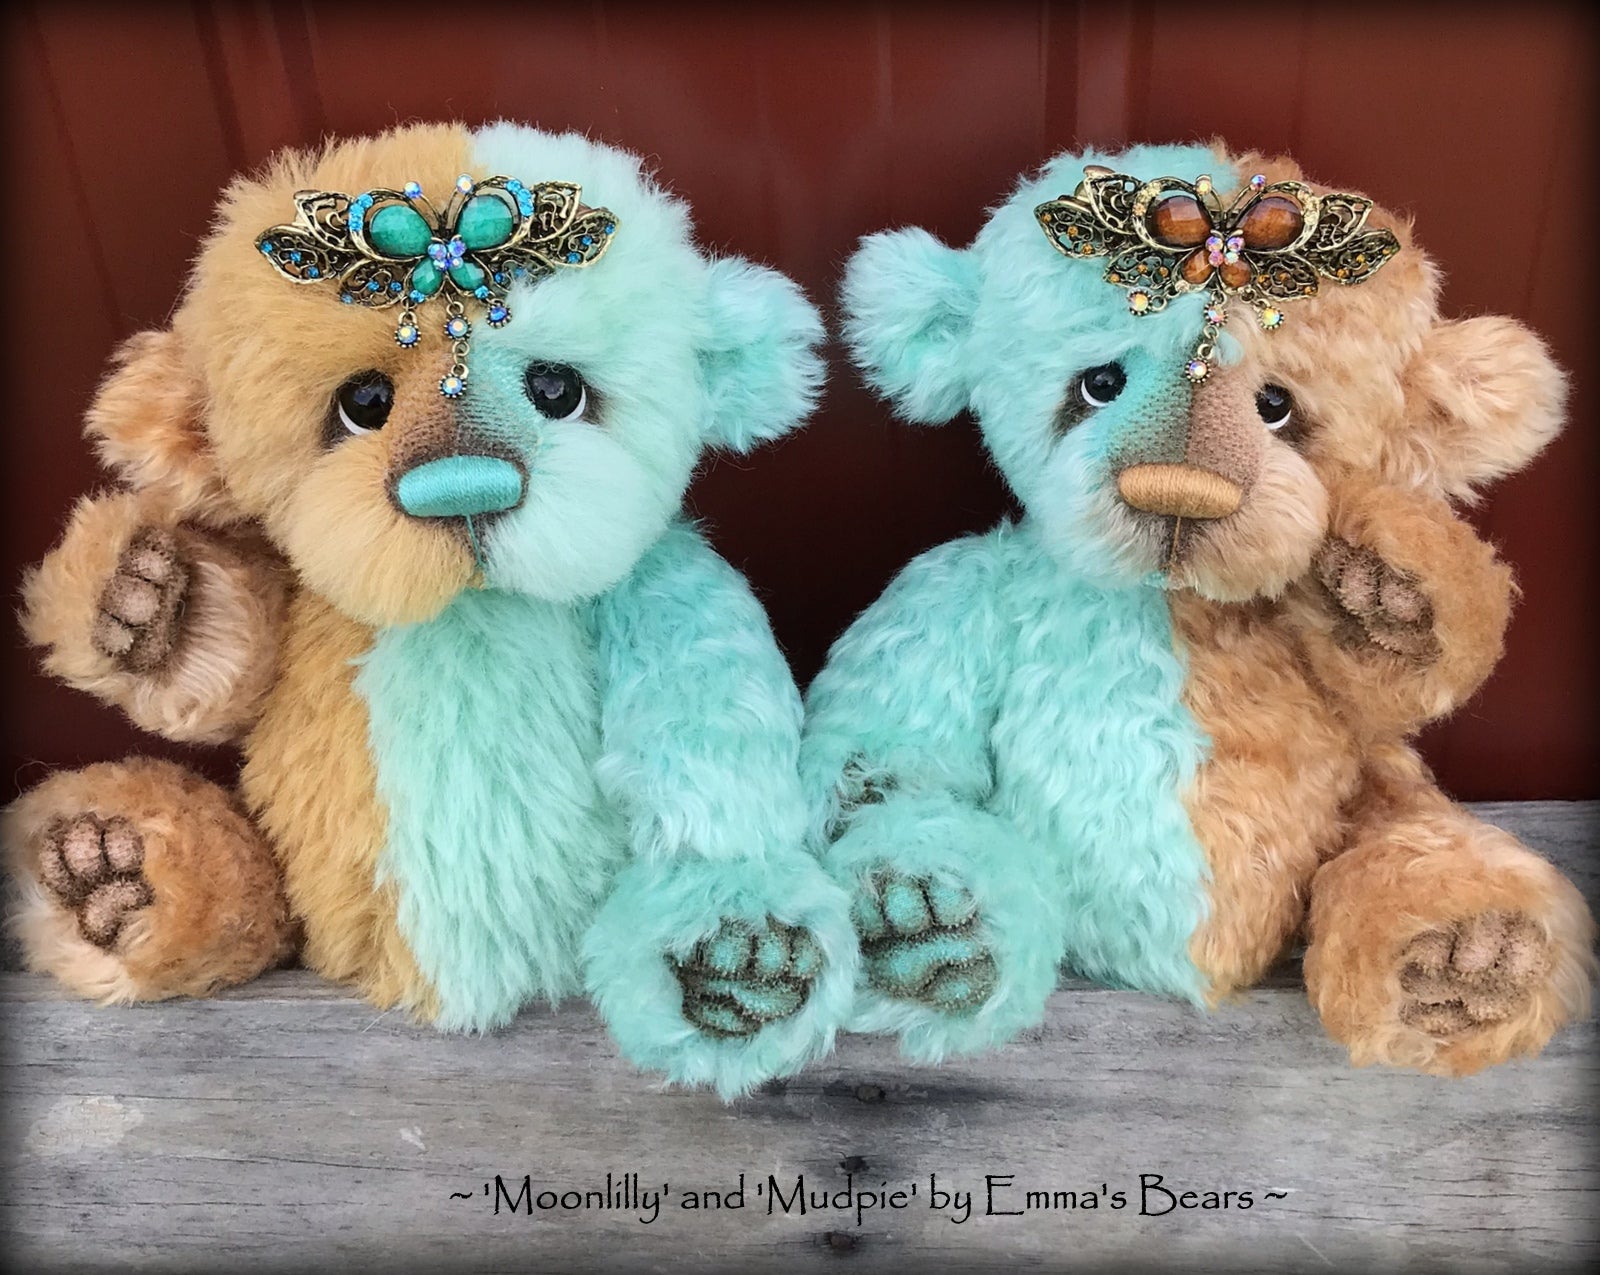 Mudpie - 10" Mohair artist bear by Emma's Bears - OOAK